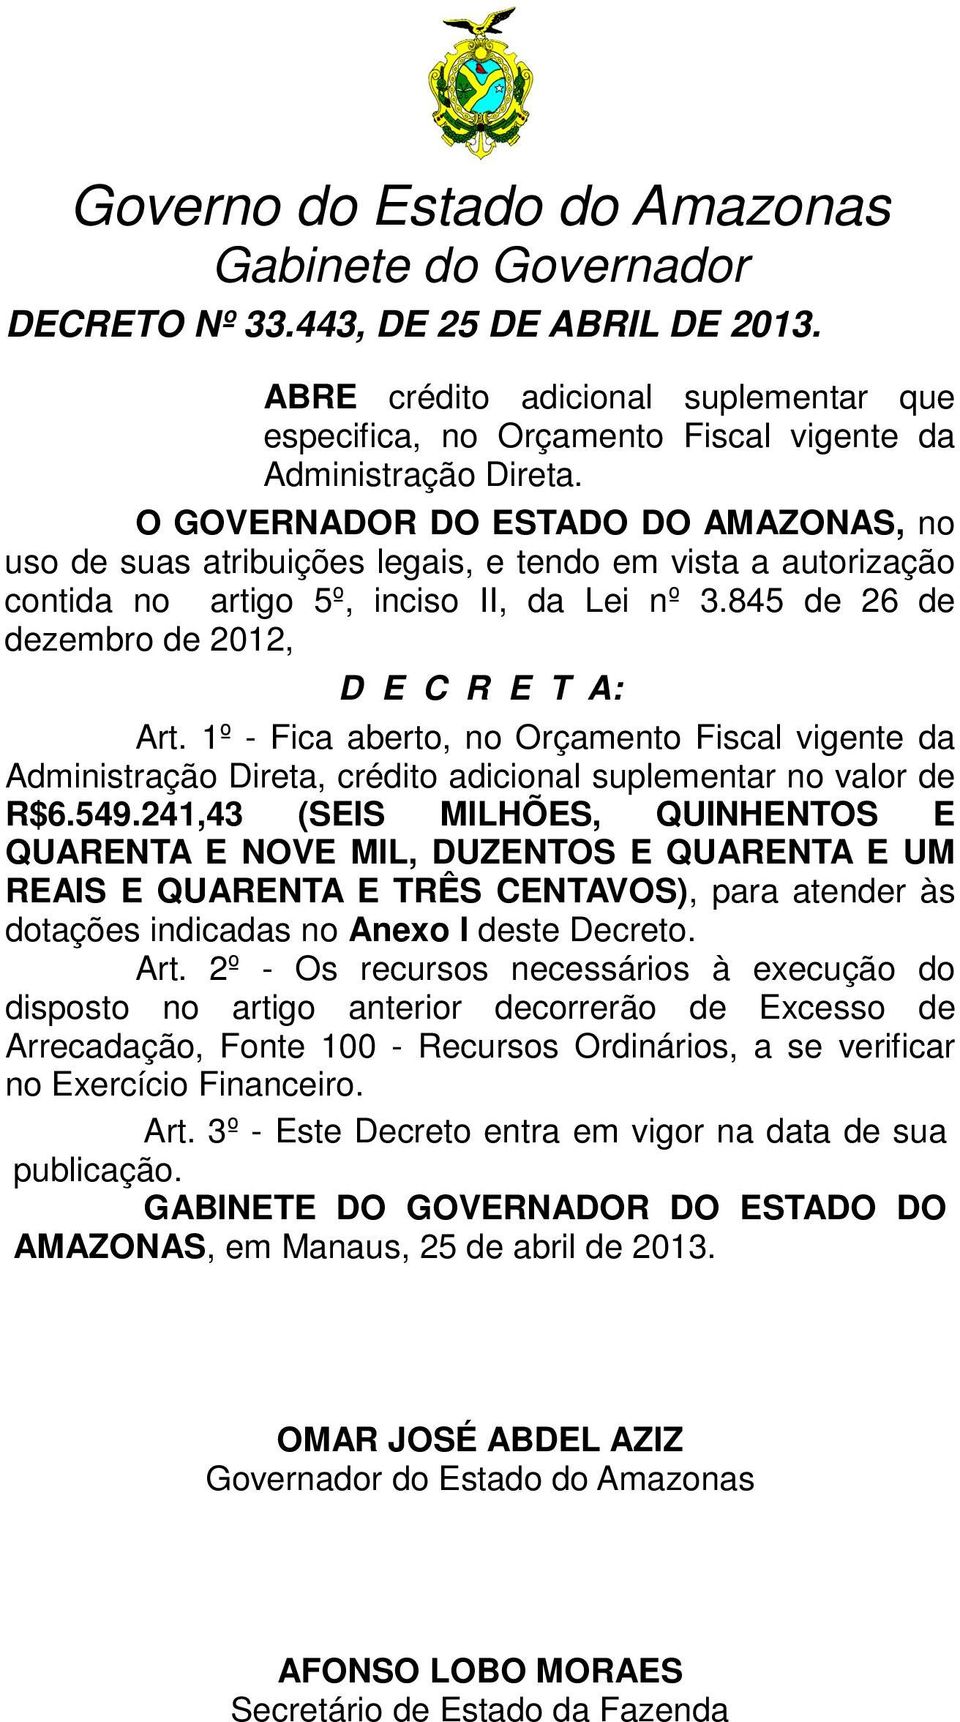 1º - Fica aberto, no Orçamento Fiscal vigente da Administração Direta, crédito adicional suplementar no valor de R$6.549.